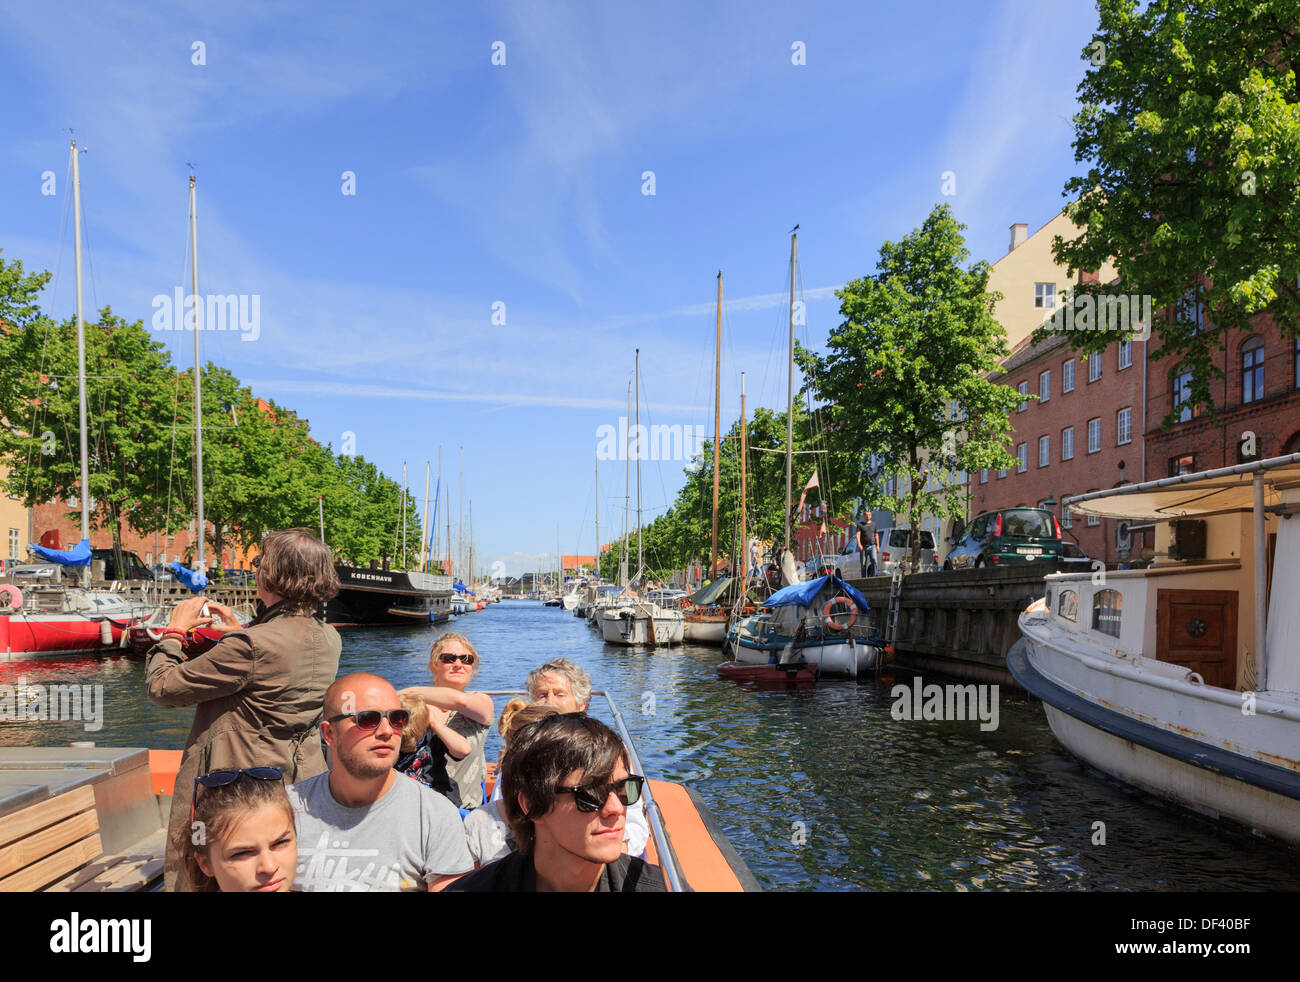 Bateau croisière touristique des touristes sur l'Christianshavns Kanal, Overgaden, Christiania, Copenhague, Danemark, Nouvelle-Zélande Banque D'Images